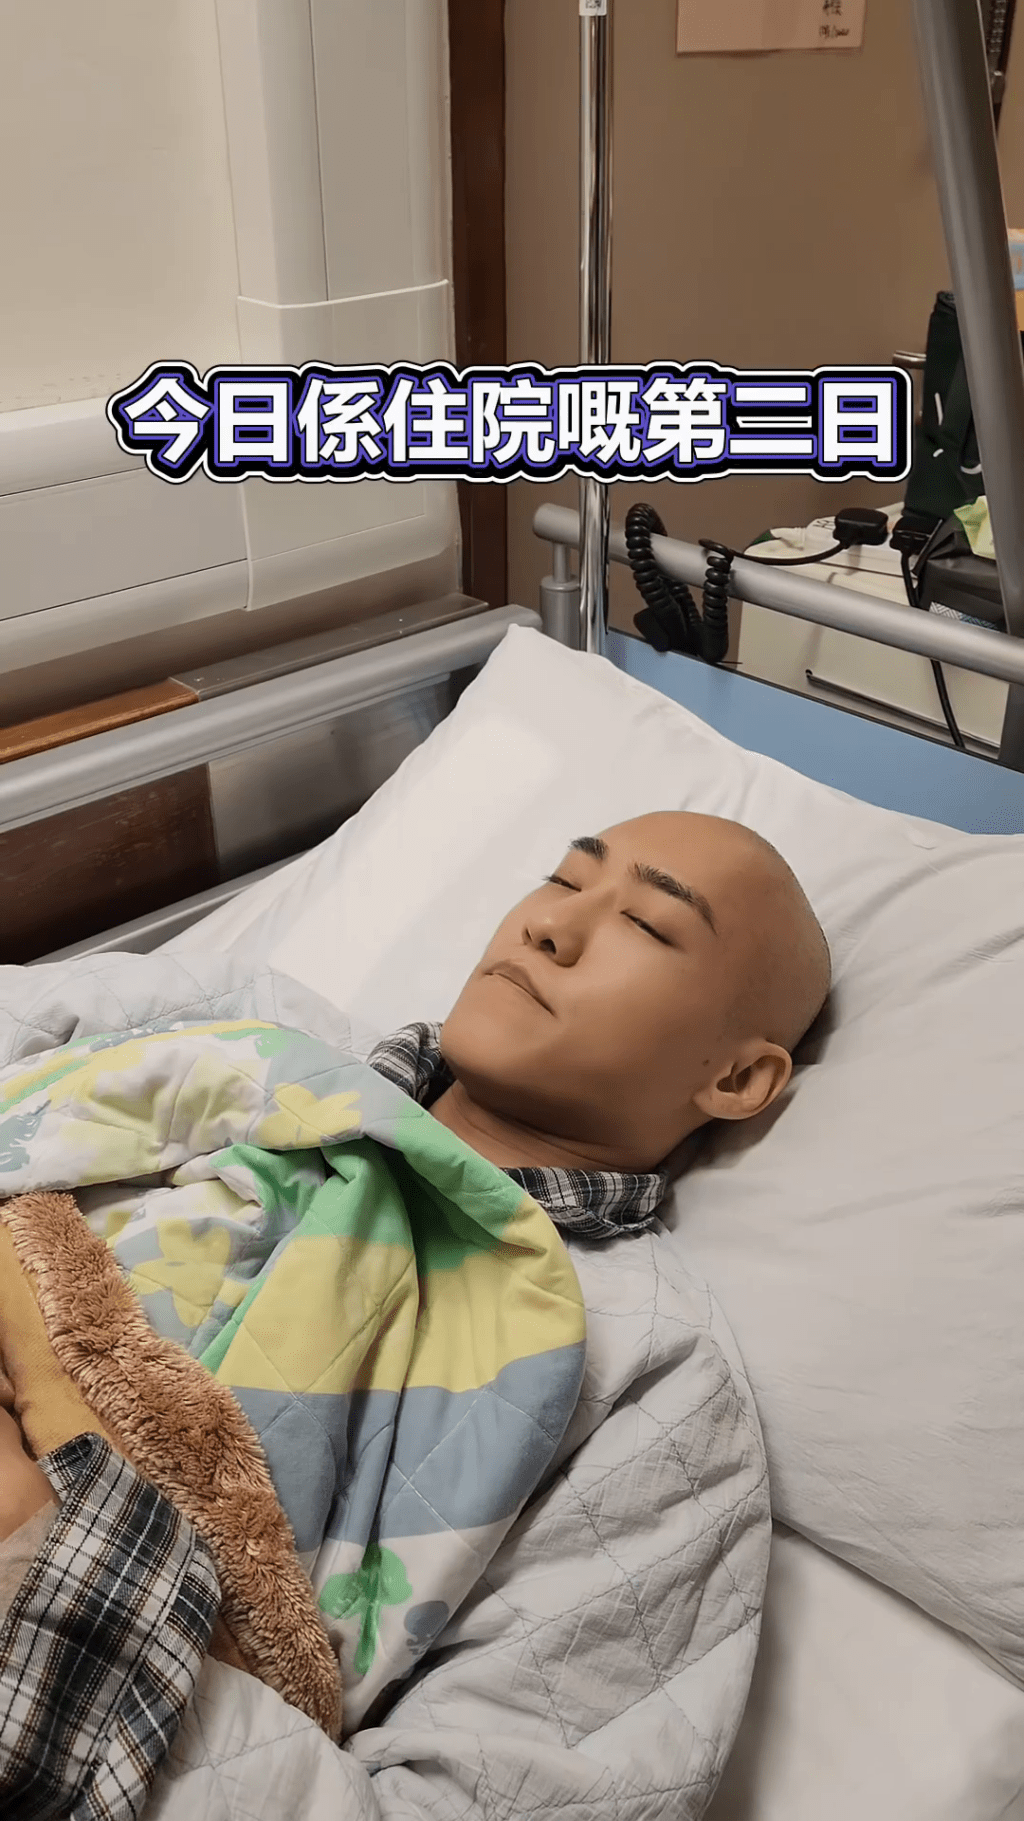 文頌男在住院第二天獲好友探病。